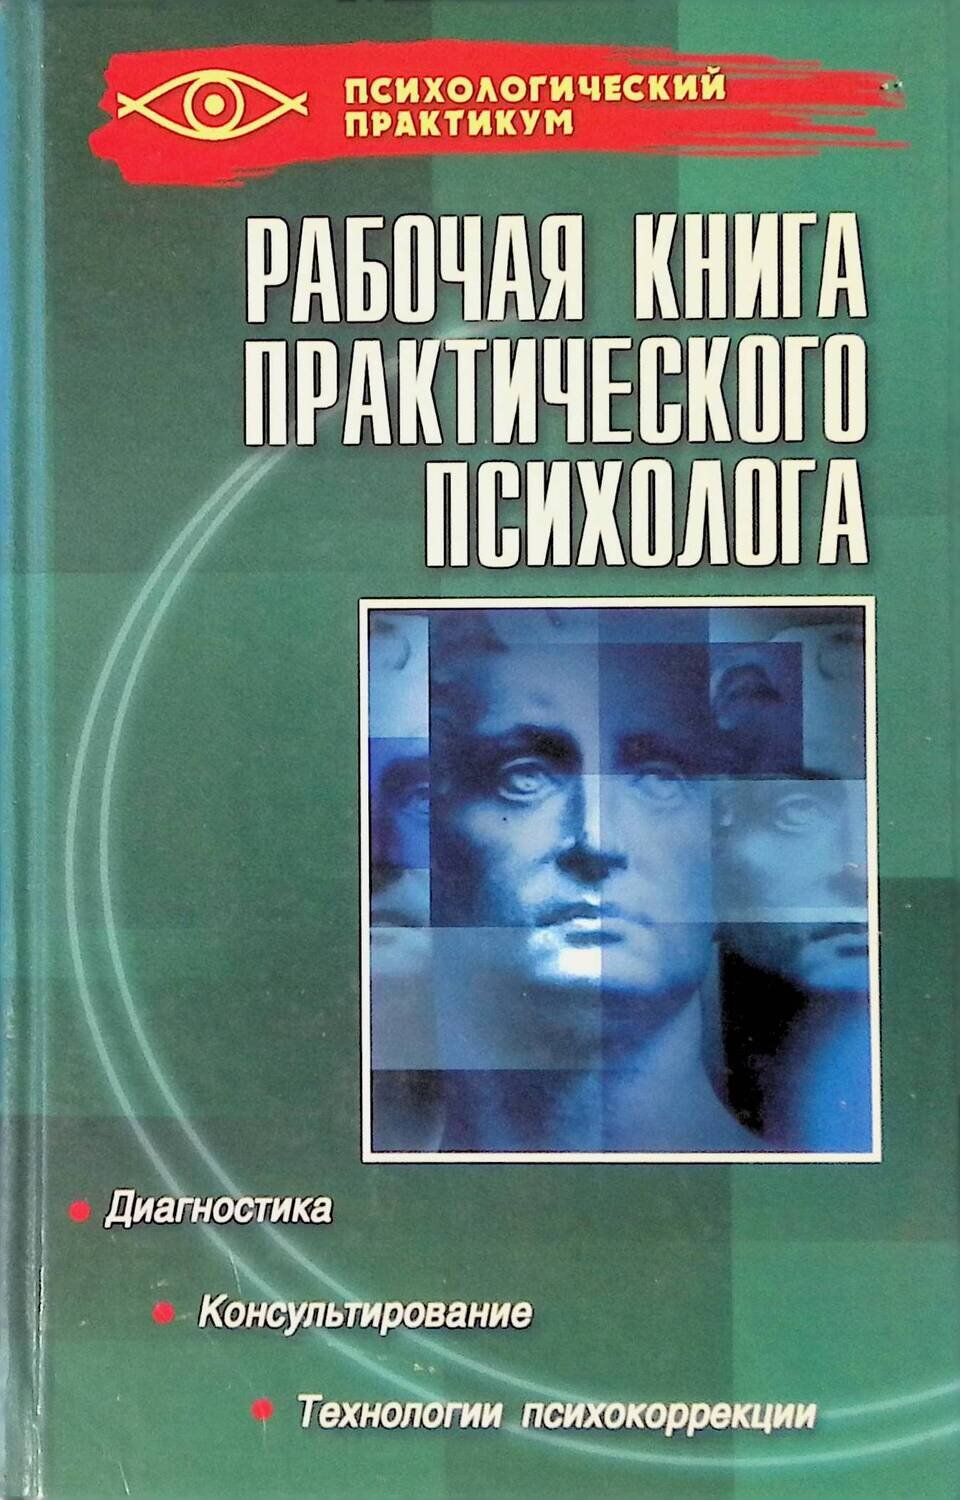 Рабочая книга практического психолога; Ежова Наталья Николаевна